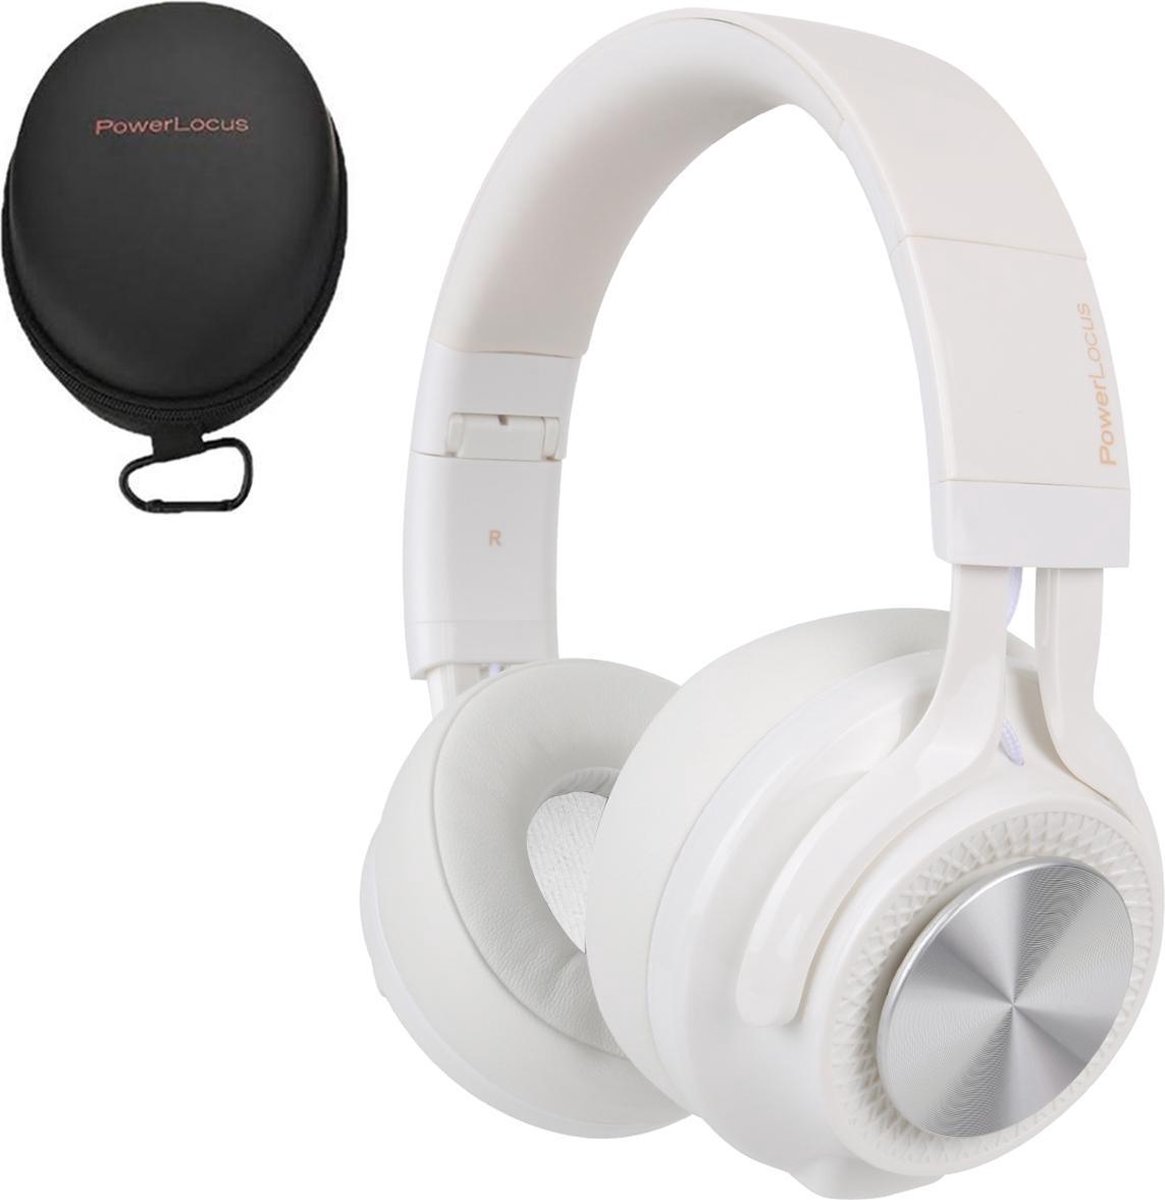 PowerLocus P6 sans fil Sur- Ear Pliable - Casque audio Bluetooth -  Microphone - Zwart